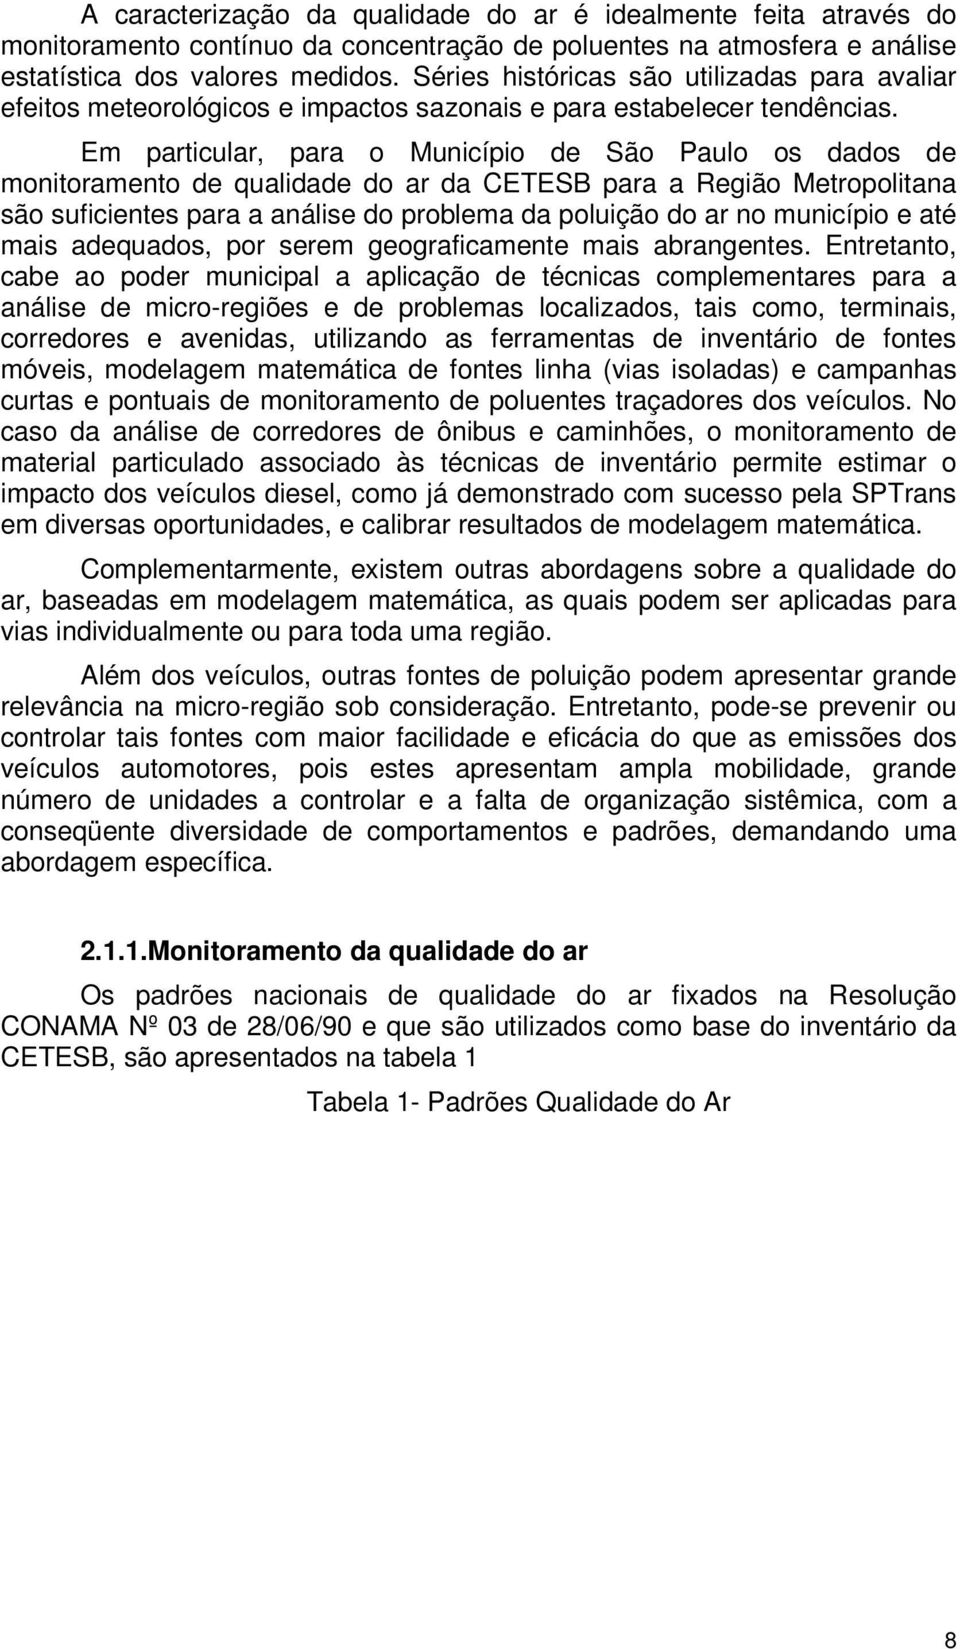 Em particular, para o Município de São Paulo os dados de monitoramento de qualidade do ar da CETESB para a Região Metropolitana são suficientes para a análise do problema da poluição do ar no